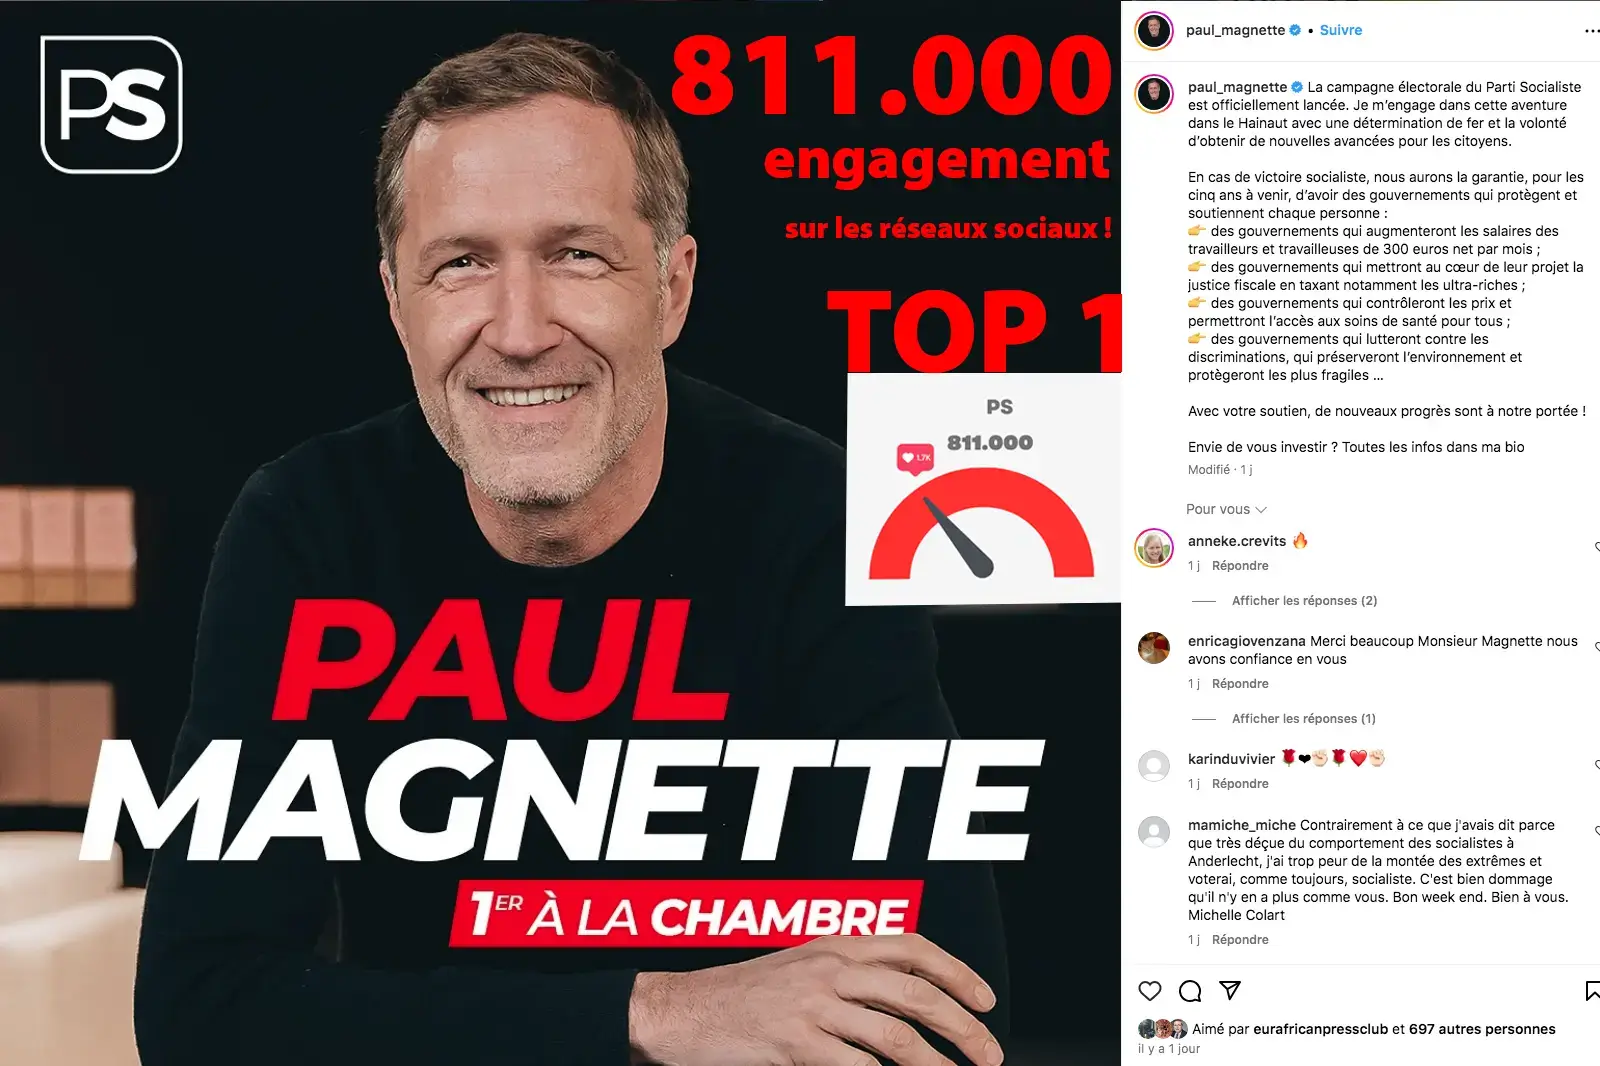 Top3-partis-belge-FR-reseaux-sociaux-Paul-magnette-president-PS